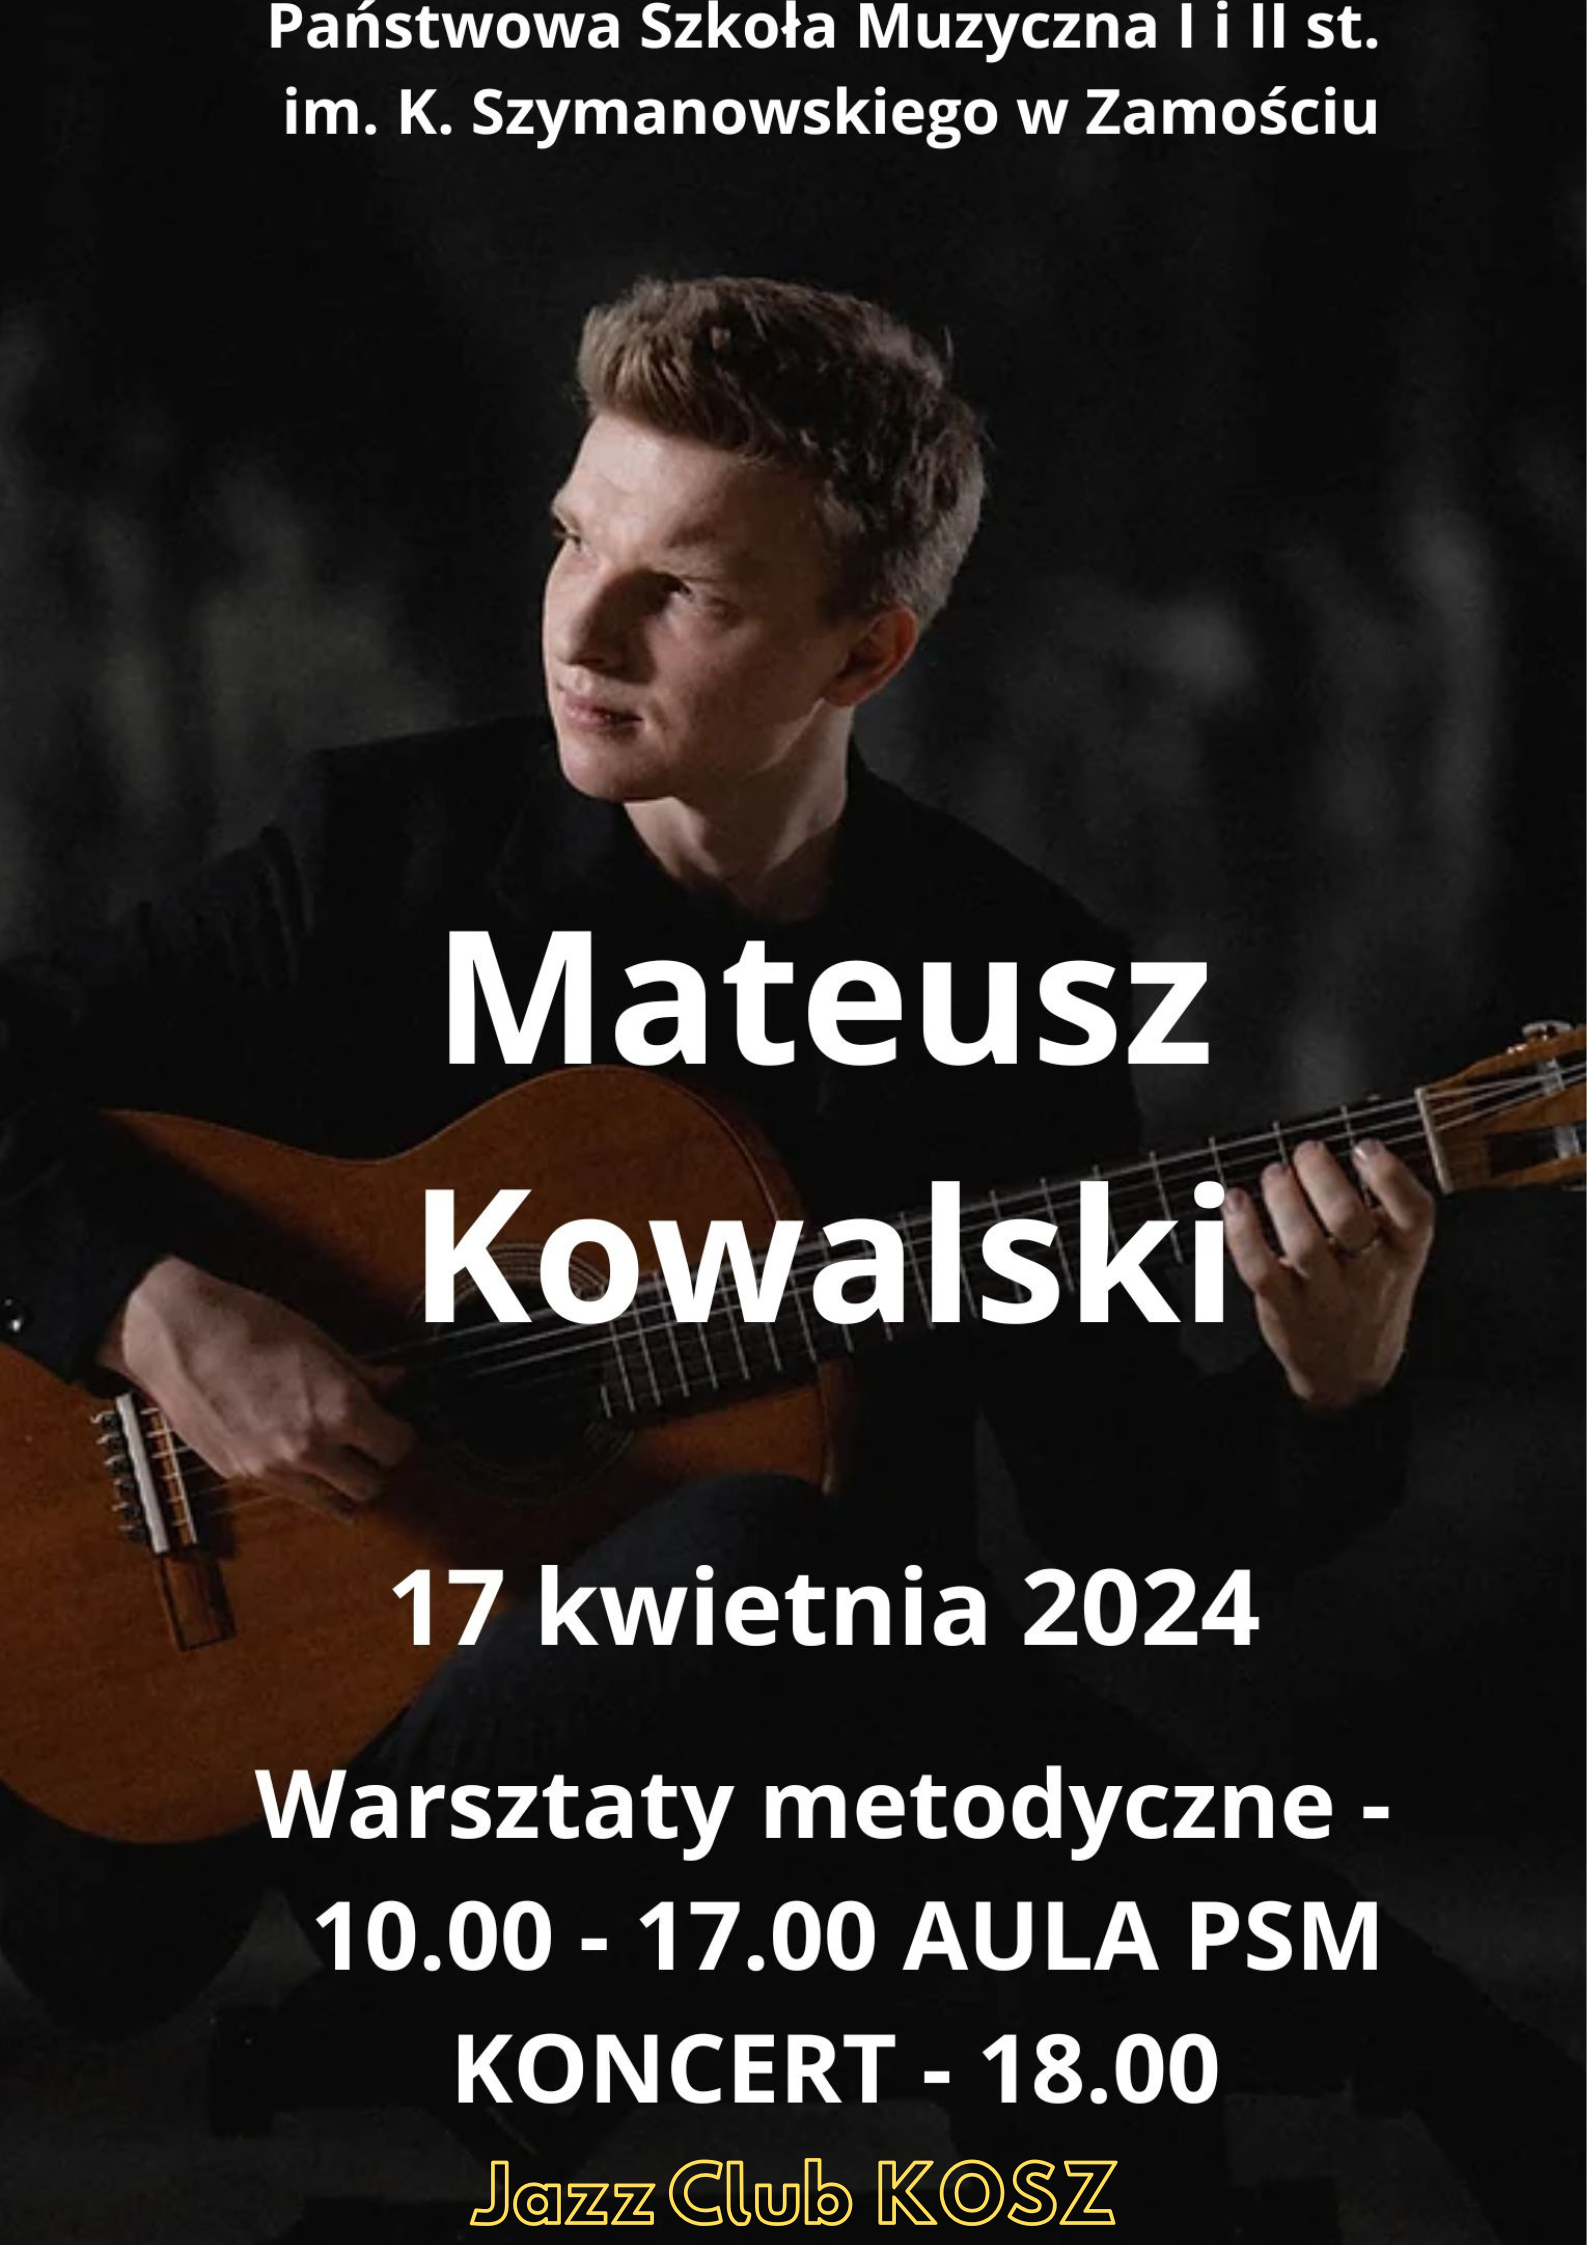 Centralnym motywem plakatu jest sylwetka gitarzysty - Mateusza Kowalskiego, w pozycji siedzącej, z gitarą klasyczną, na ciemnoszarym tle. Na plakacie umieszczono informacje czcionką w kolorze białym, o treści (od góry): "Państwowa Szkoła Muzyczna I i II st. im. K. Szymanowskiego w Zamościu", poniżej: " Mateusz Kowalski", poniżej: "17 kwietnia 2024", poniżej: "Warsztaty metodyczne - 10.00-17.00 Aula PSM, Koncert - 18.00". Poniżej, żółtą czcionką napis: " Jazz Club KOSZ".